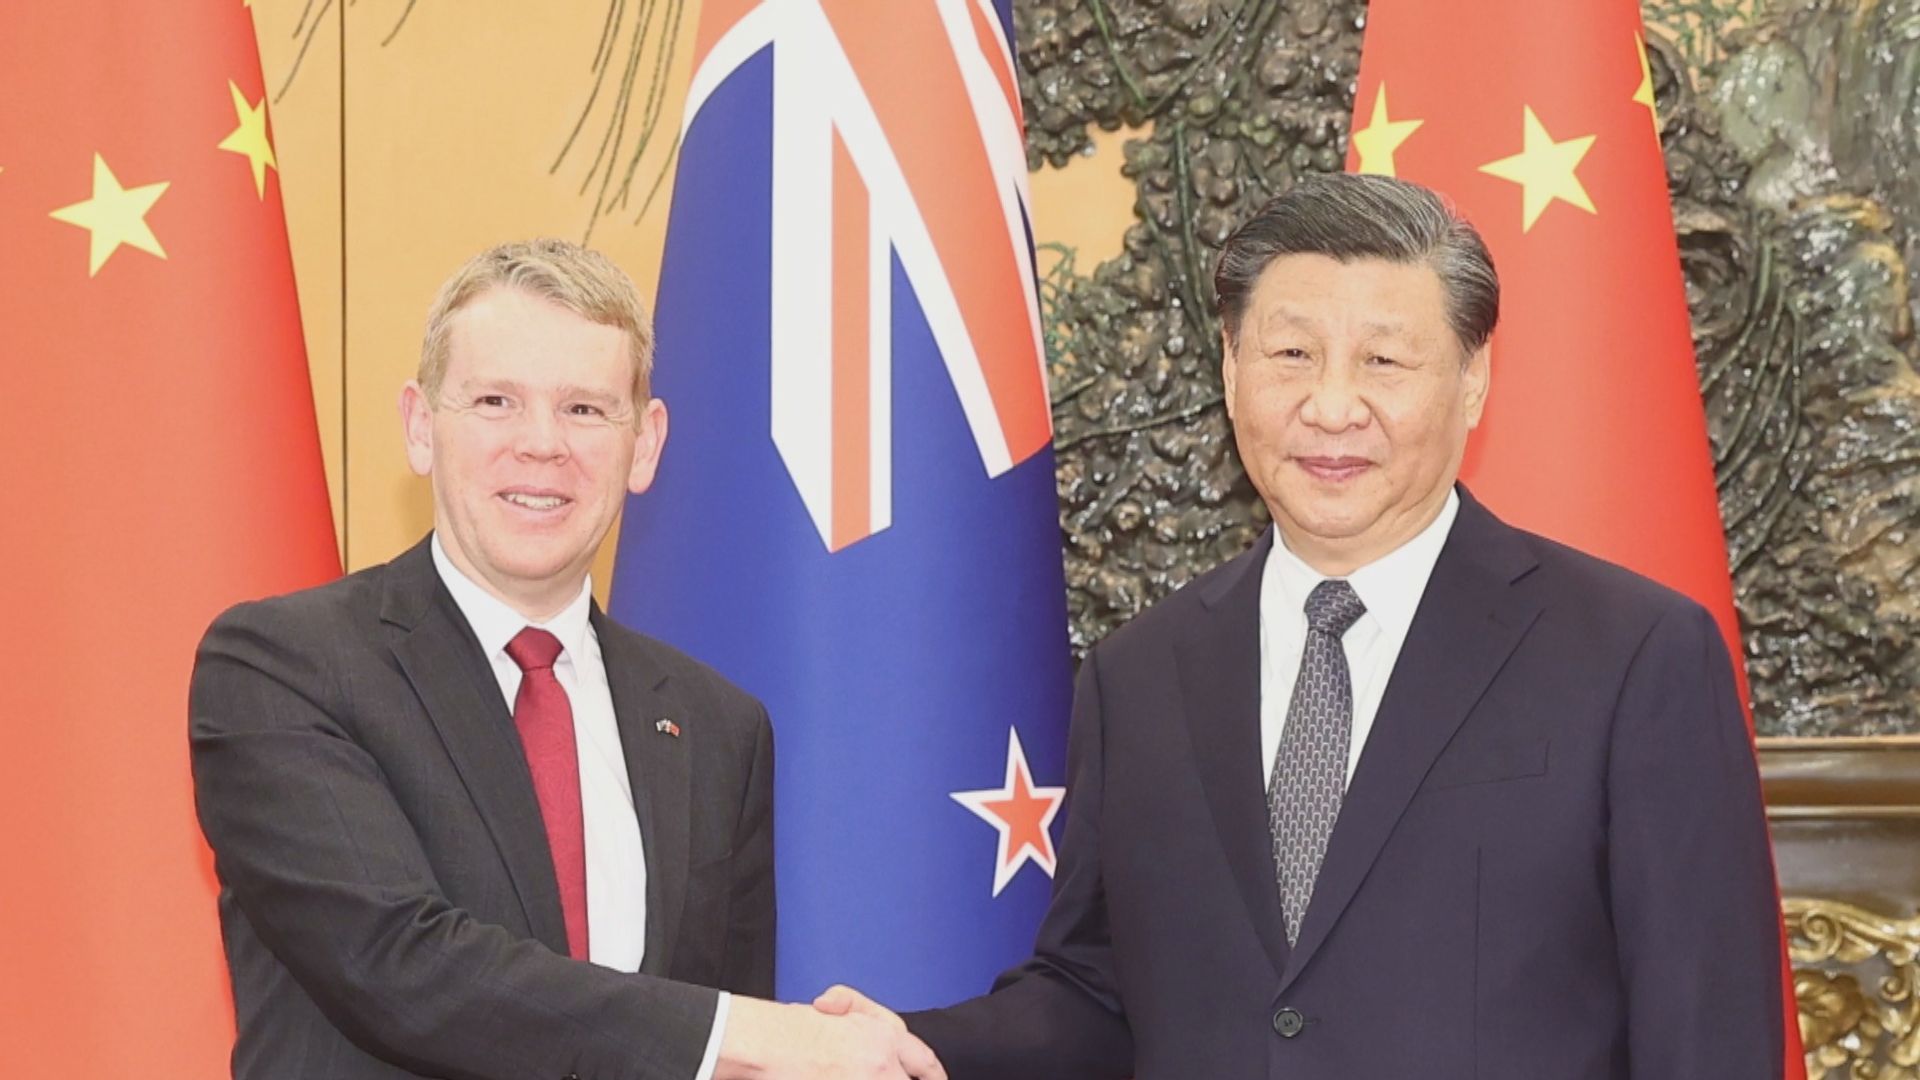 習近平會見新西蘭總理希普金斯 指中國始終視新西蘭為朋友及夥伴